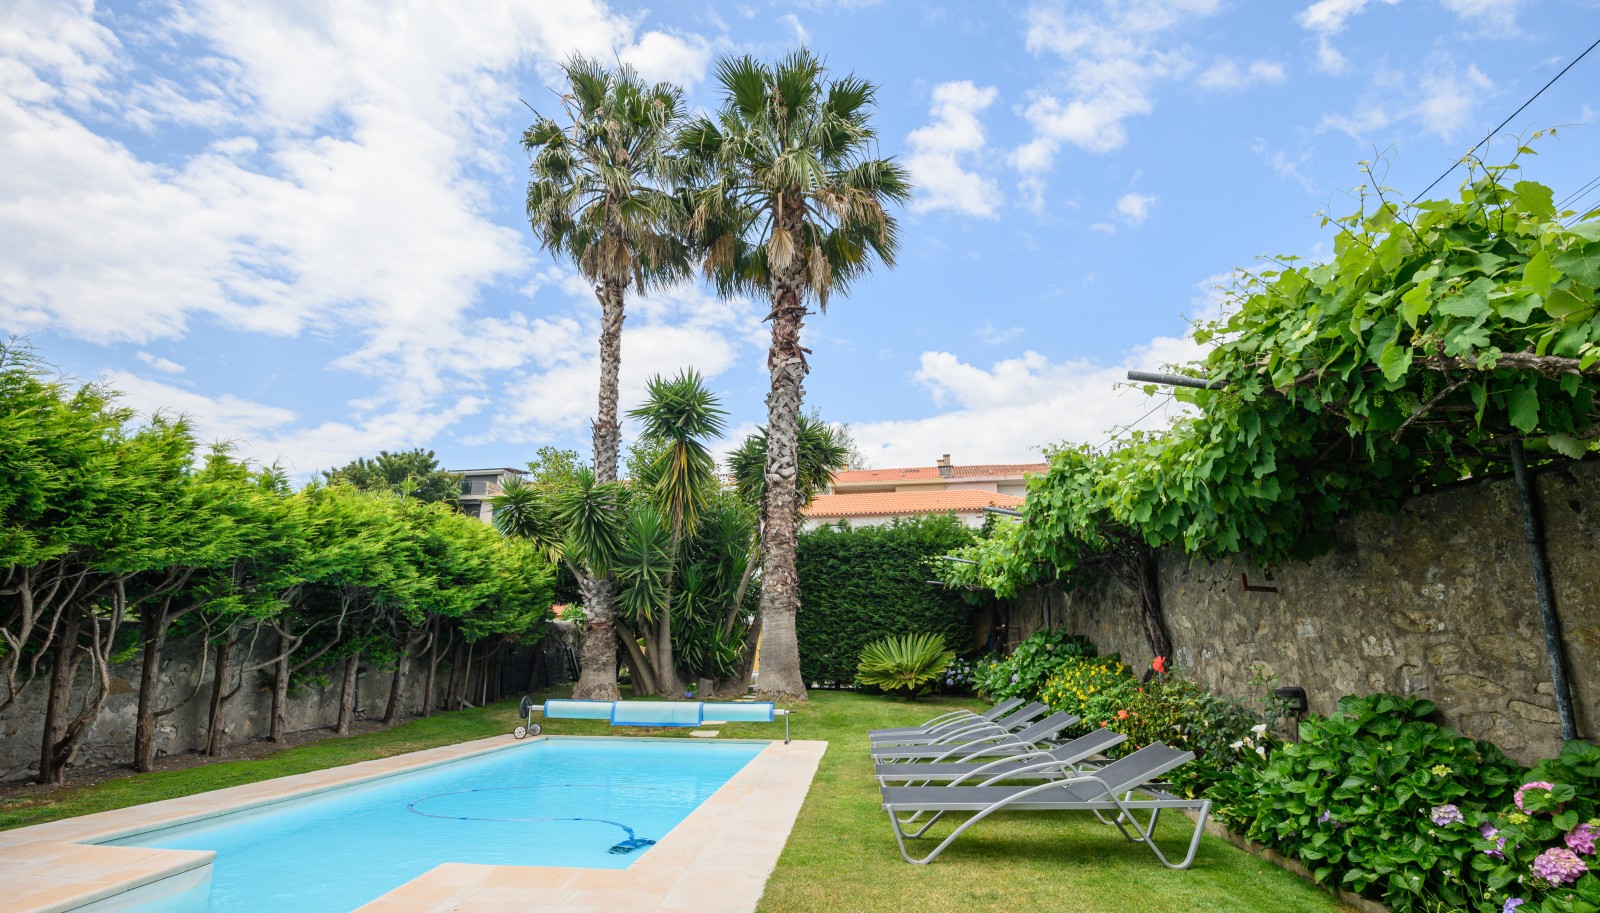 Moradia com piscina e jardim, para venda, em Serralves, Porto_227431